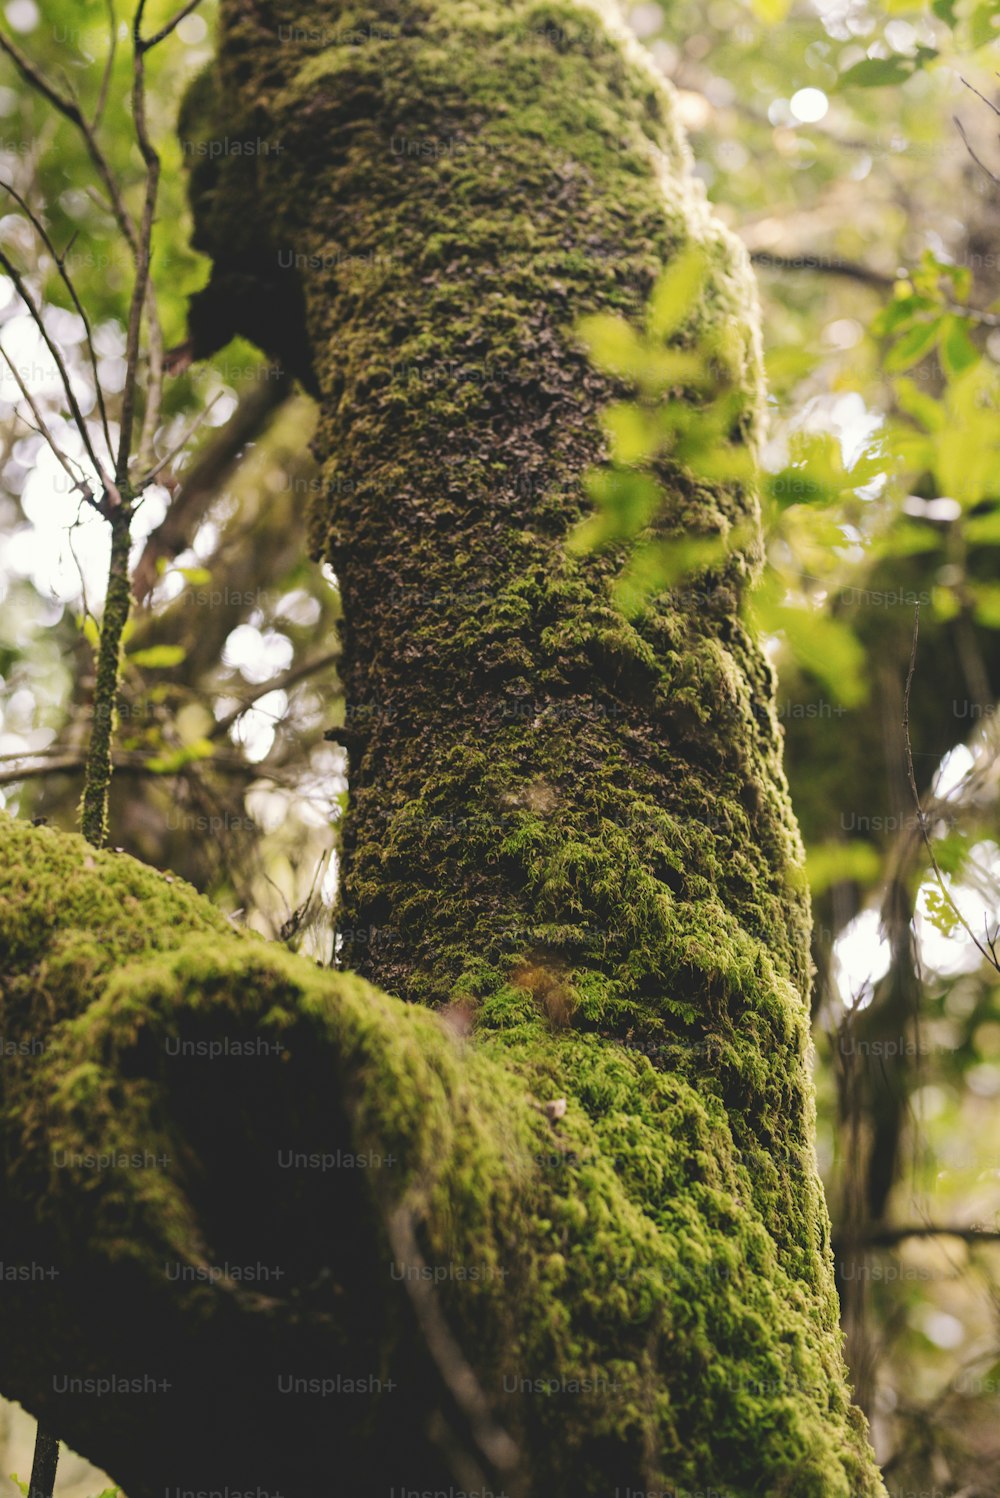 Primer plano del árbol del tronco con almizcle verde en el bosque - concepto de cuidado del medio ambiente y de la preservación de la naturaleza